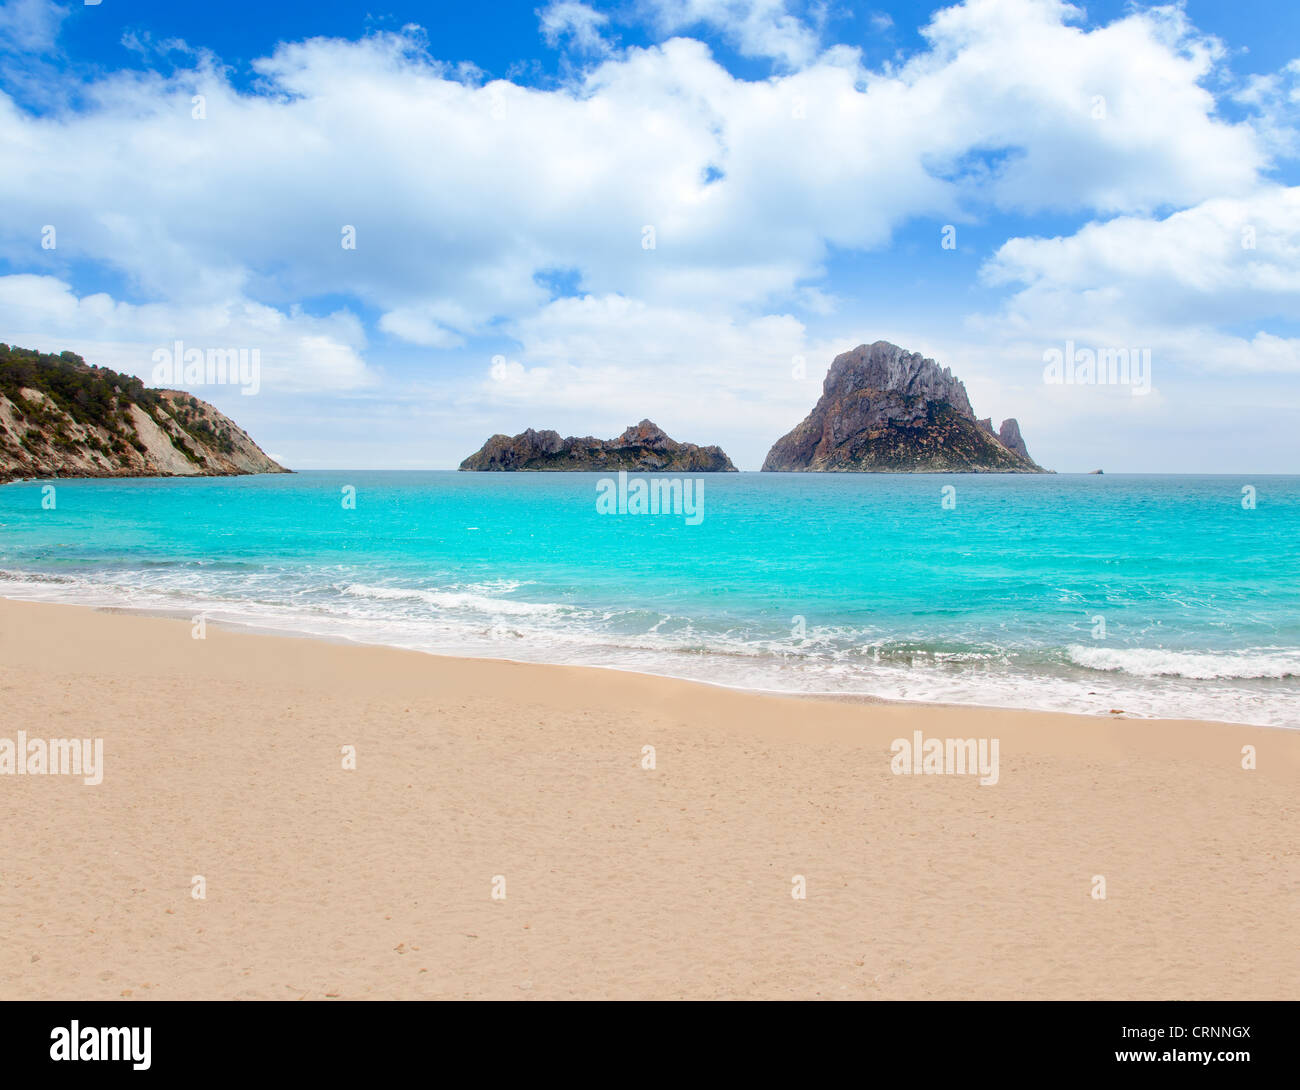 Cala d Hort Ibiza beach Es Vedra island in Mediterranean Stock Photo